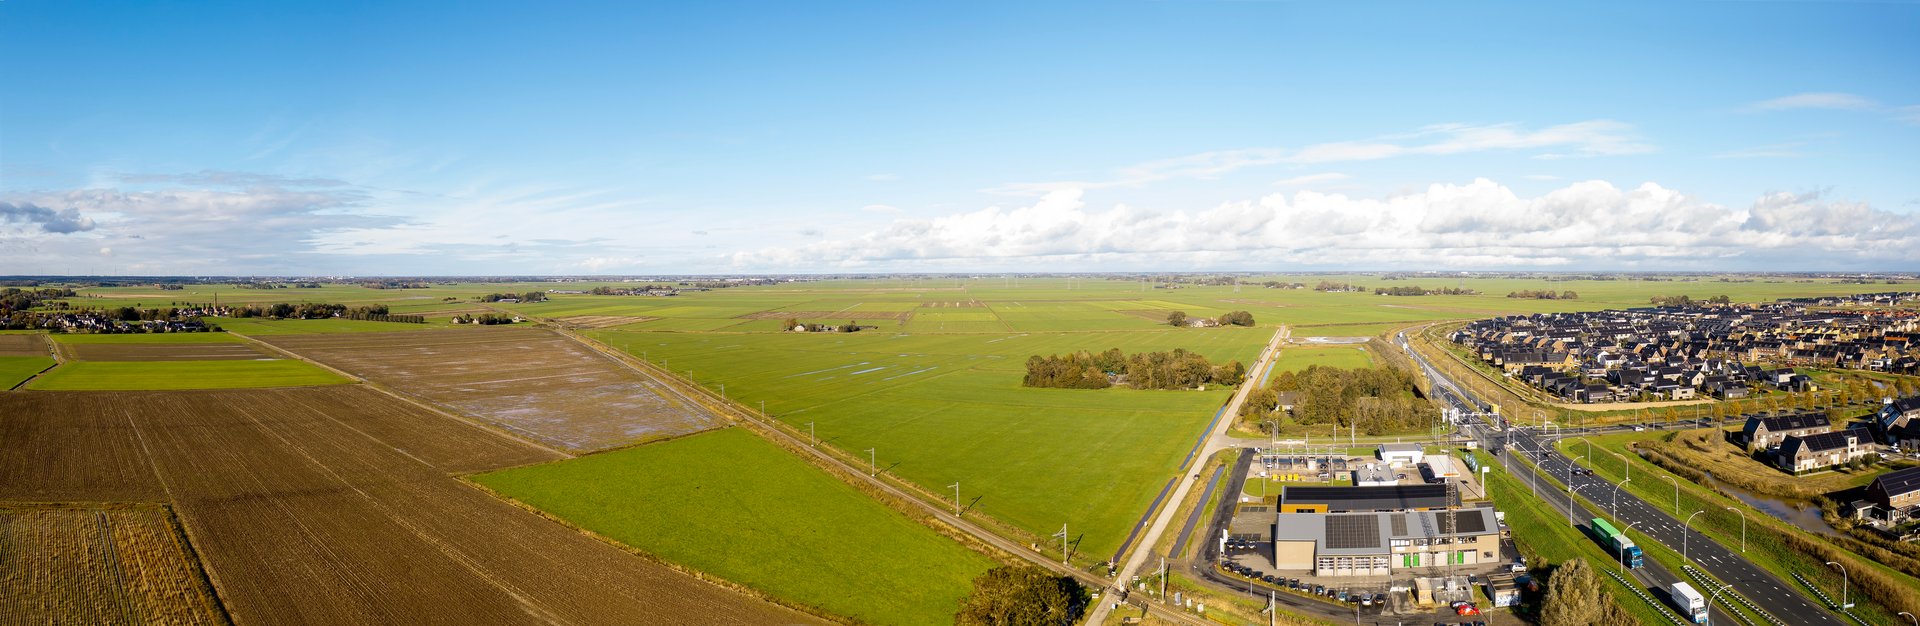 Dronefoto van de locatie Breecamp-West